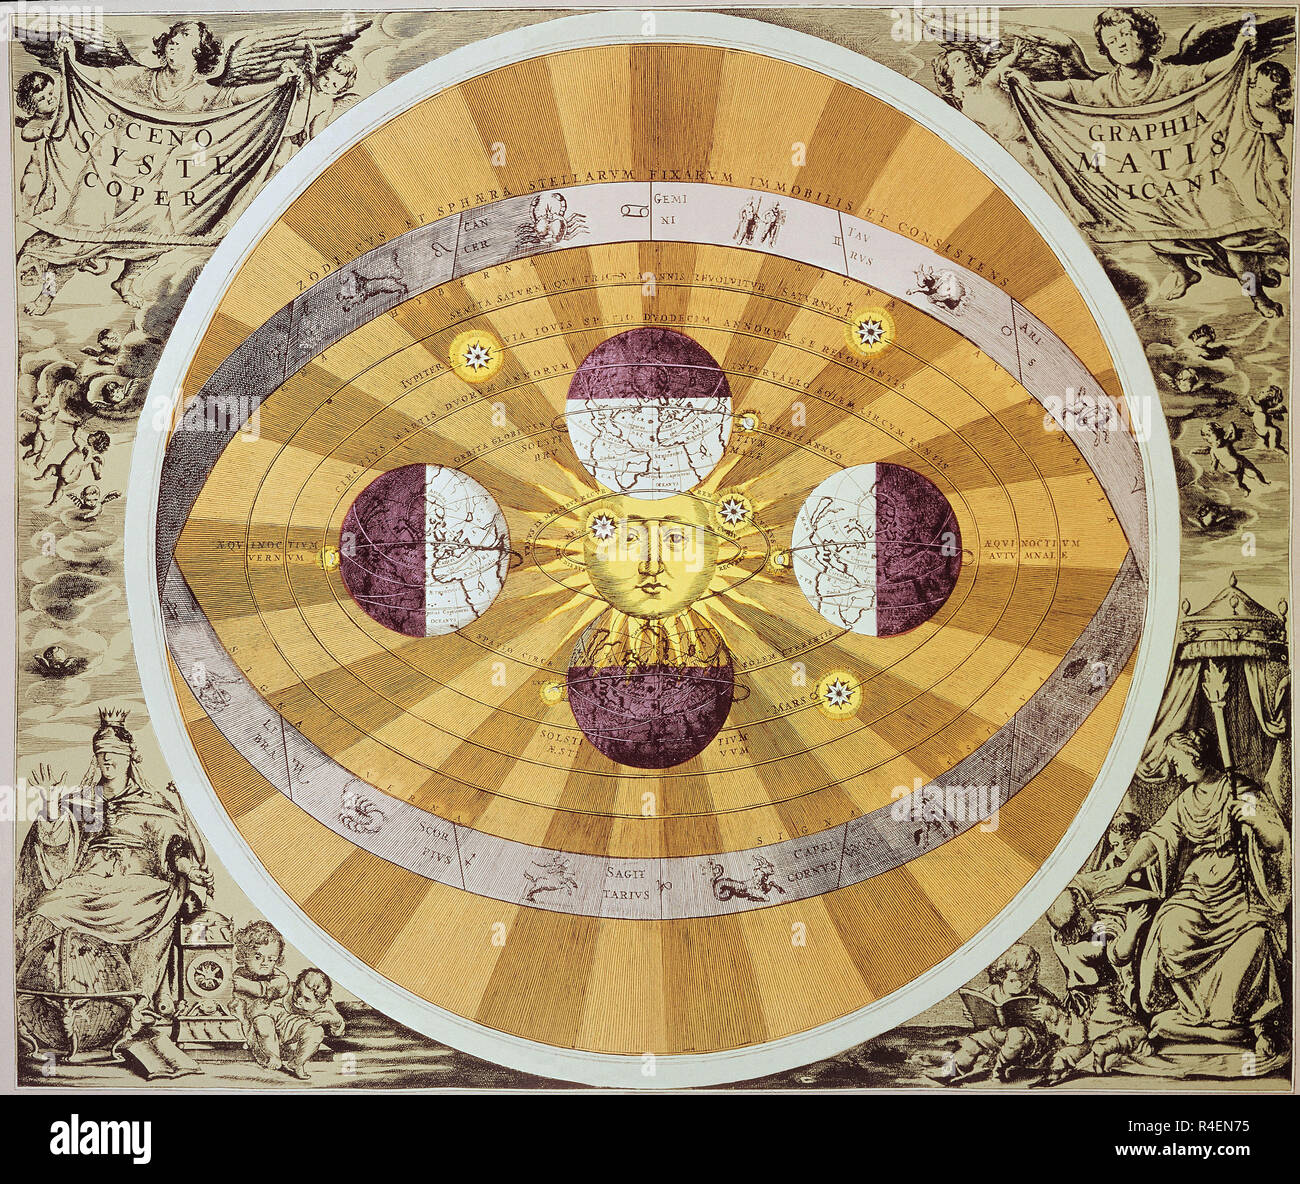 Formulazione di una teoria eliocentrica del sistema solare di Nicolò Copernico (1473-1543). Xv secolo. Parigi, collezione privata. Autore: COPERNICUS, NICOLAUS. Posizione: Collezione privata. La Francia. Foto Stock